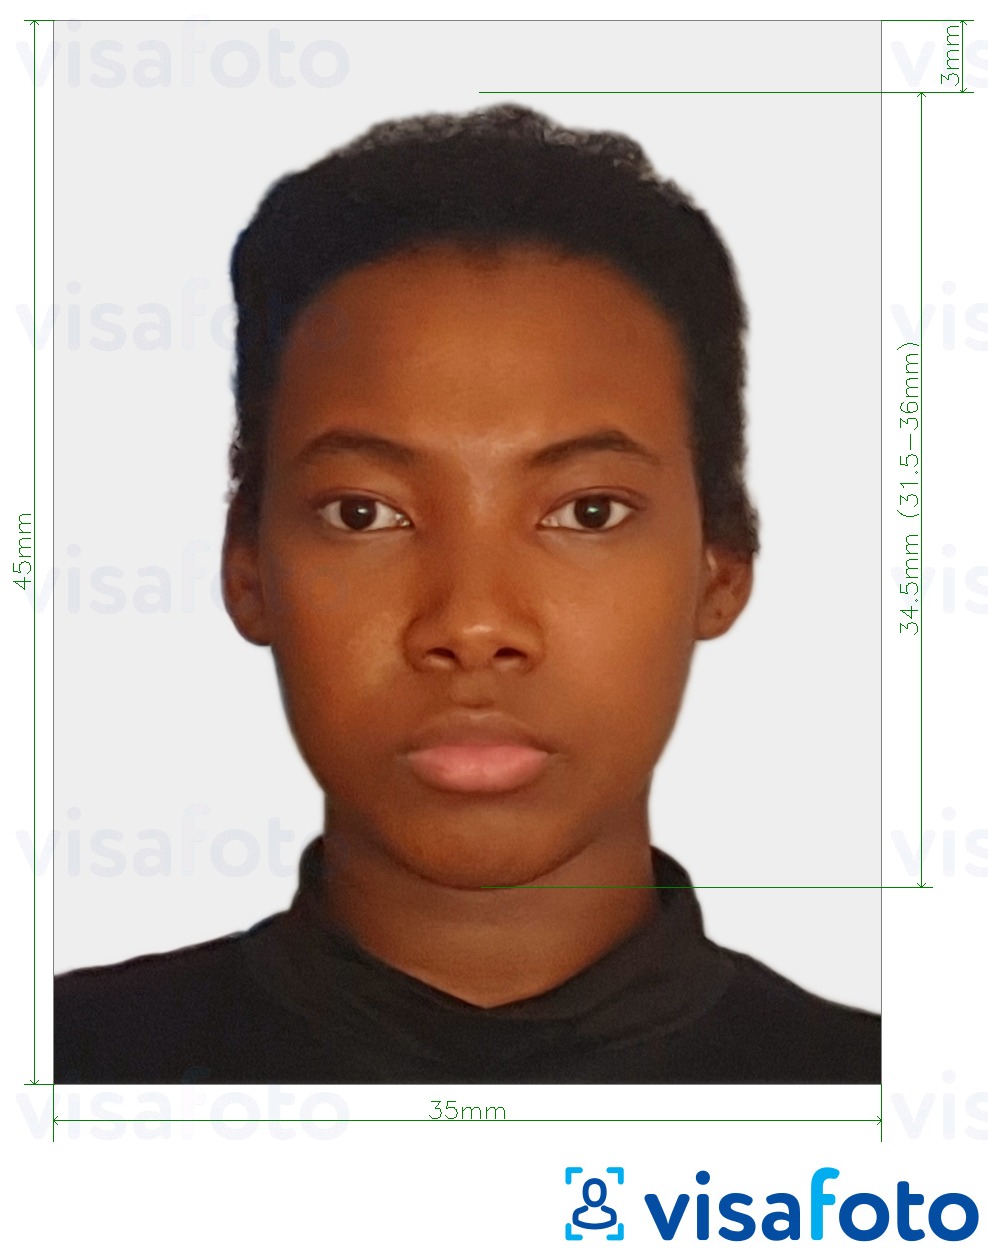 Przykład zdjęcia dla Paszport Zimbabwe 3,5x4,5 cm (35x45 mm) z podaniem dokładnego rozmiaru.